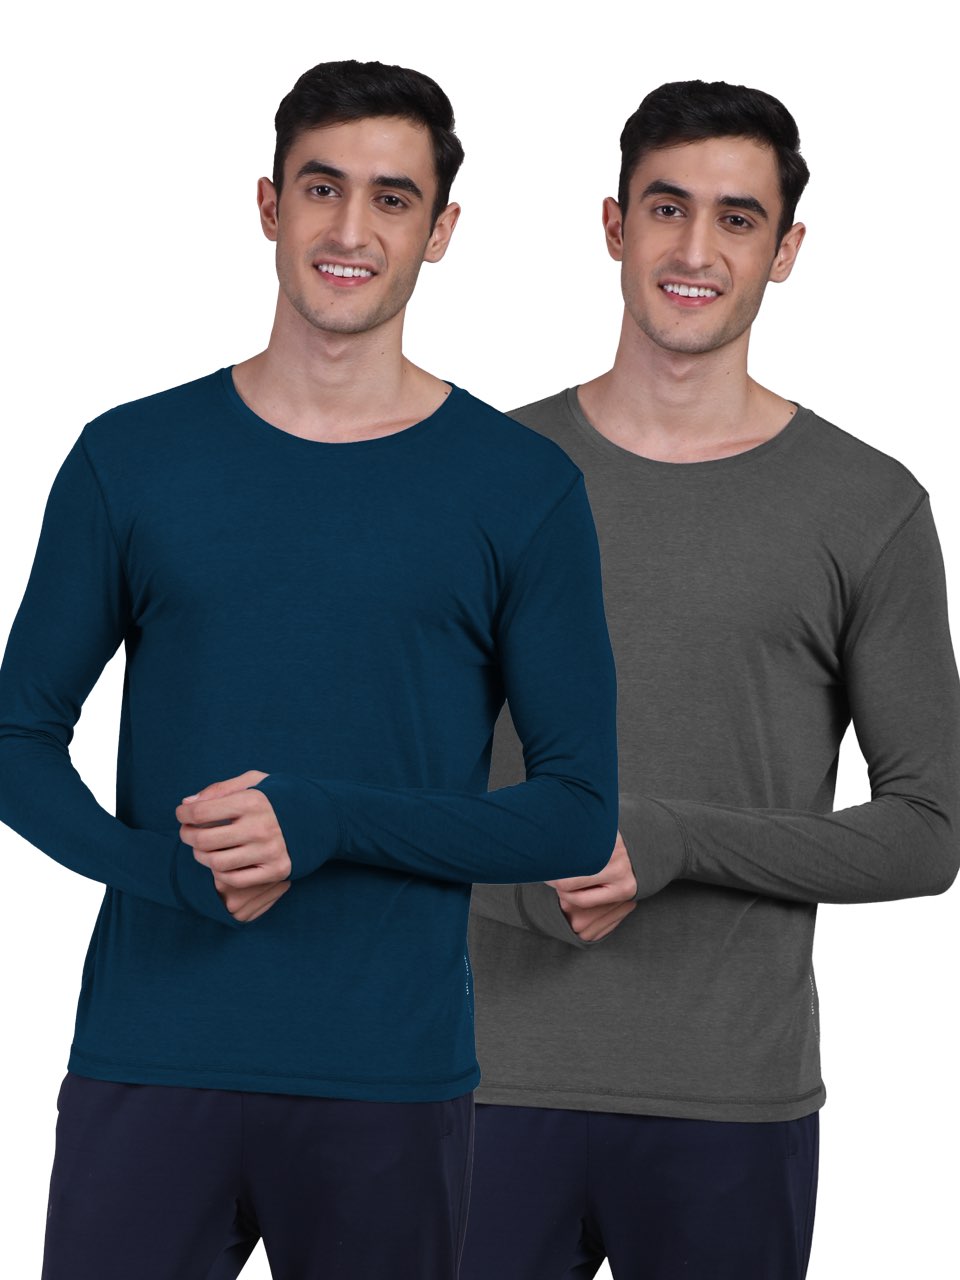 Men's Organic Bamboo Skins (Full Sleeves-Undershirt, Loungewear, Sleepwear) - Pack of 2